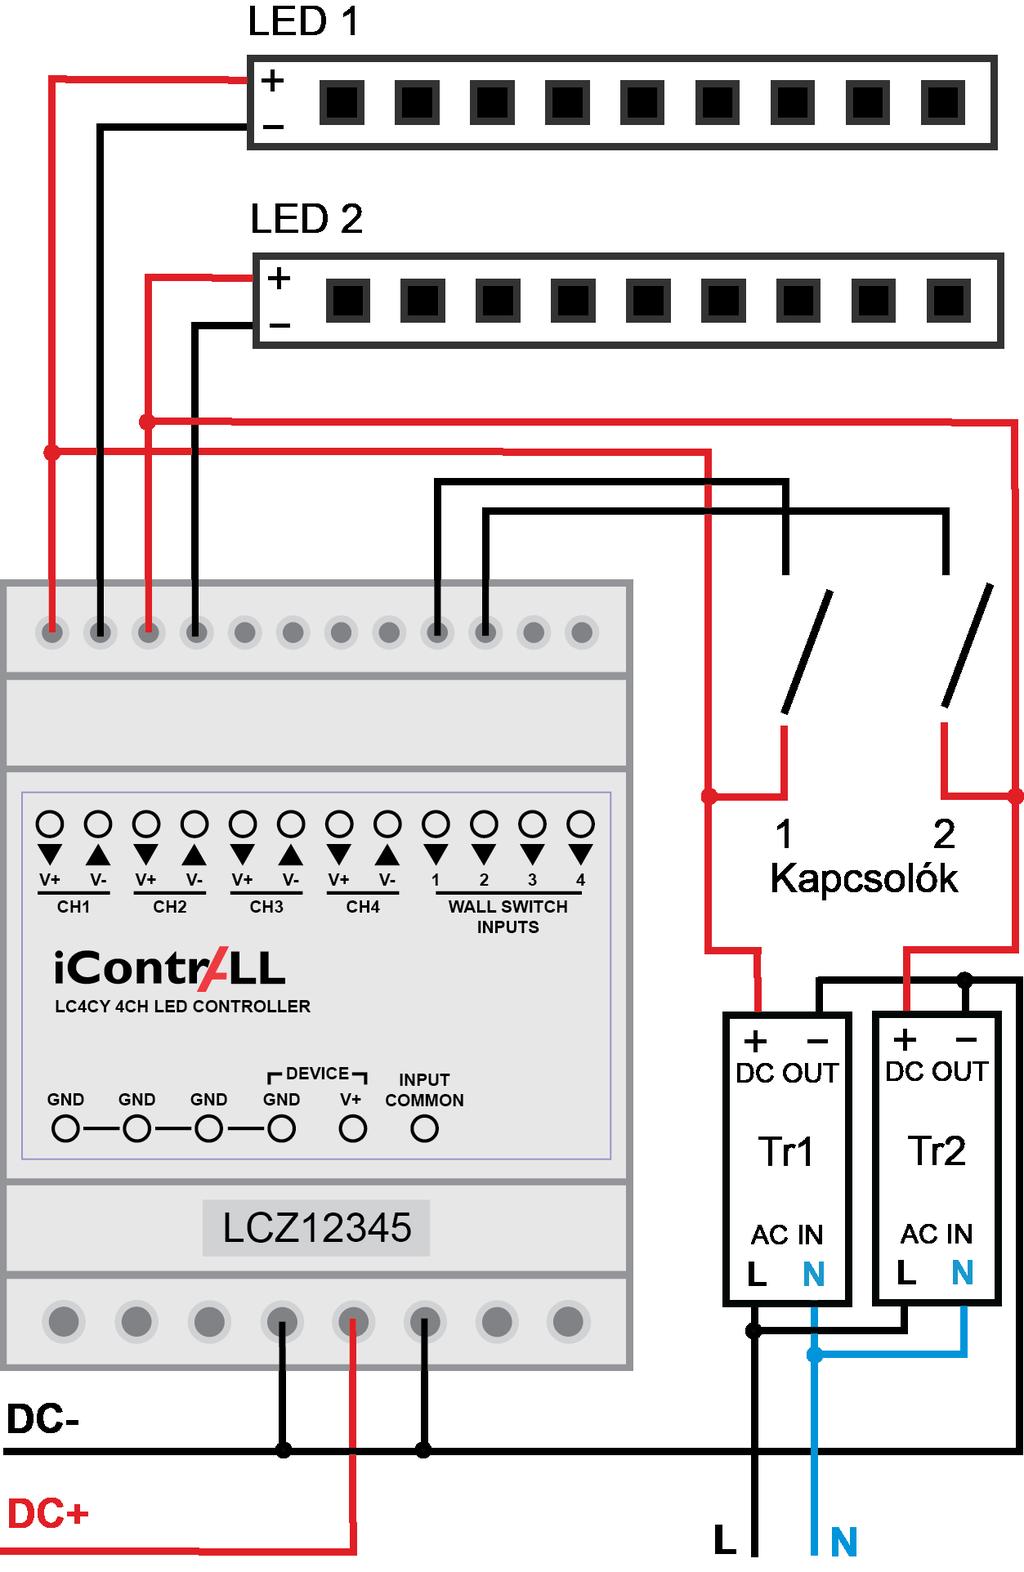 A vezérlő bekötése Ha a DC- (GND) kerül az Input common bemenetre (mint az ábrán), akkor a falikapcsoló megnyomásakor V+ tápfeszültséget vár a vezérlő a falikapcsoló bemenetein.